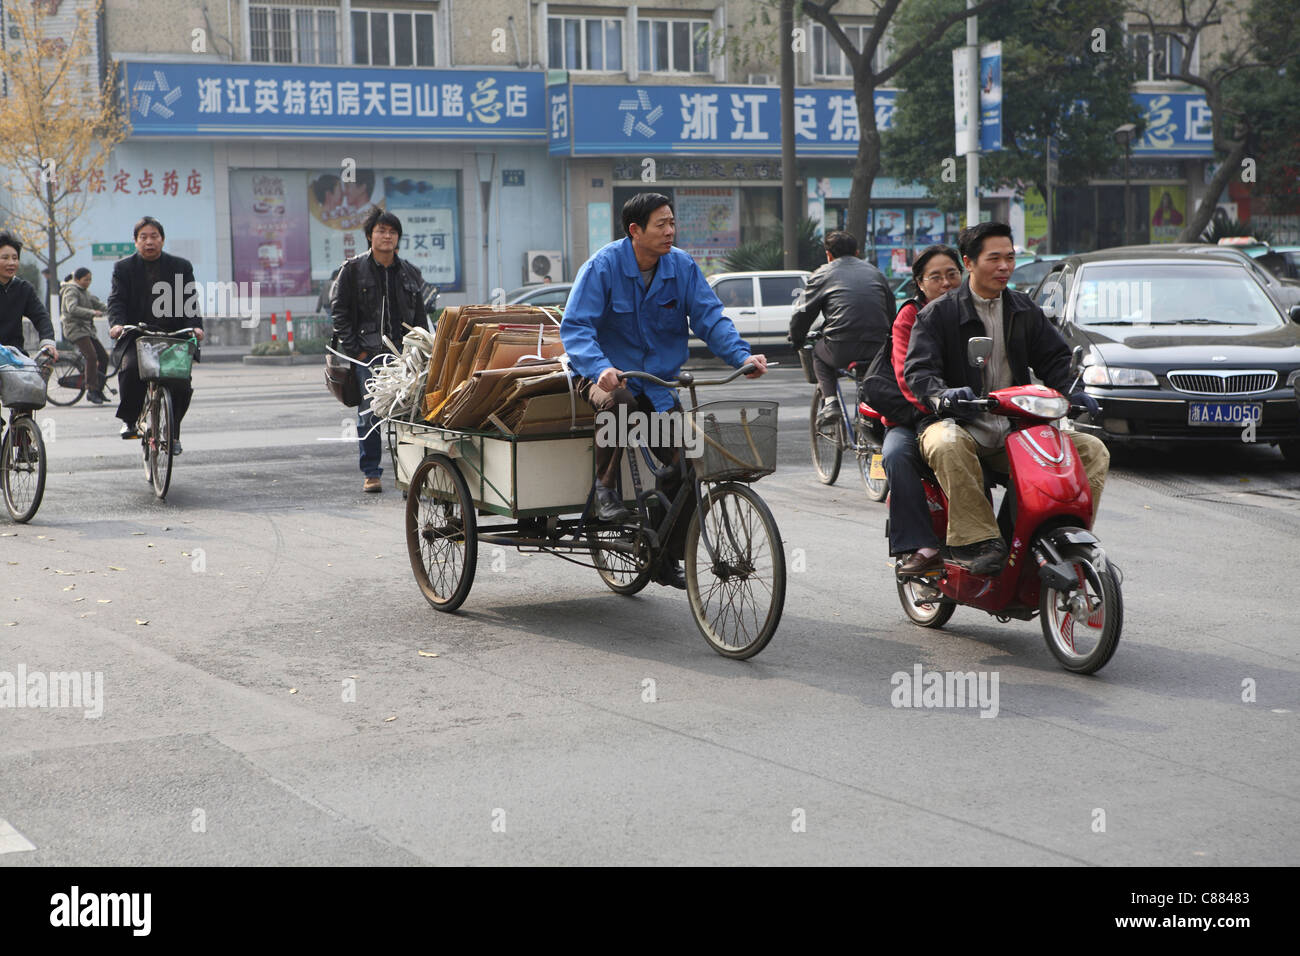 Chinesische Straßenszene, mit Fahrräder, Dreirad Moped und Auto, Hangzhou, China, Asien Stockfoto